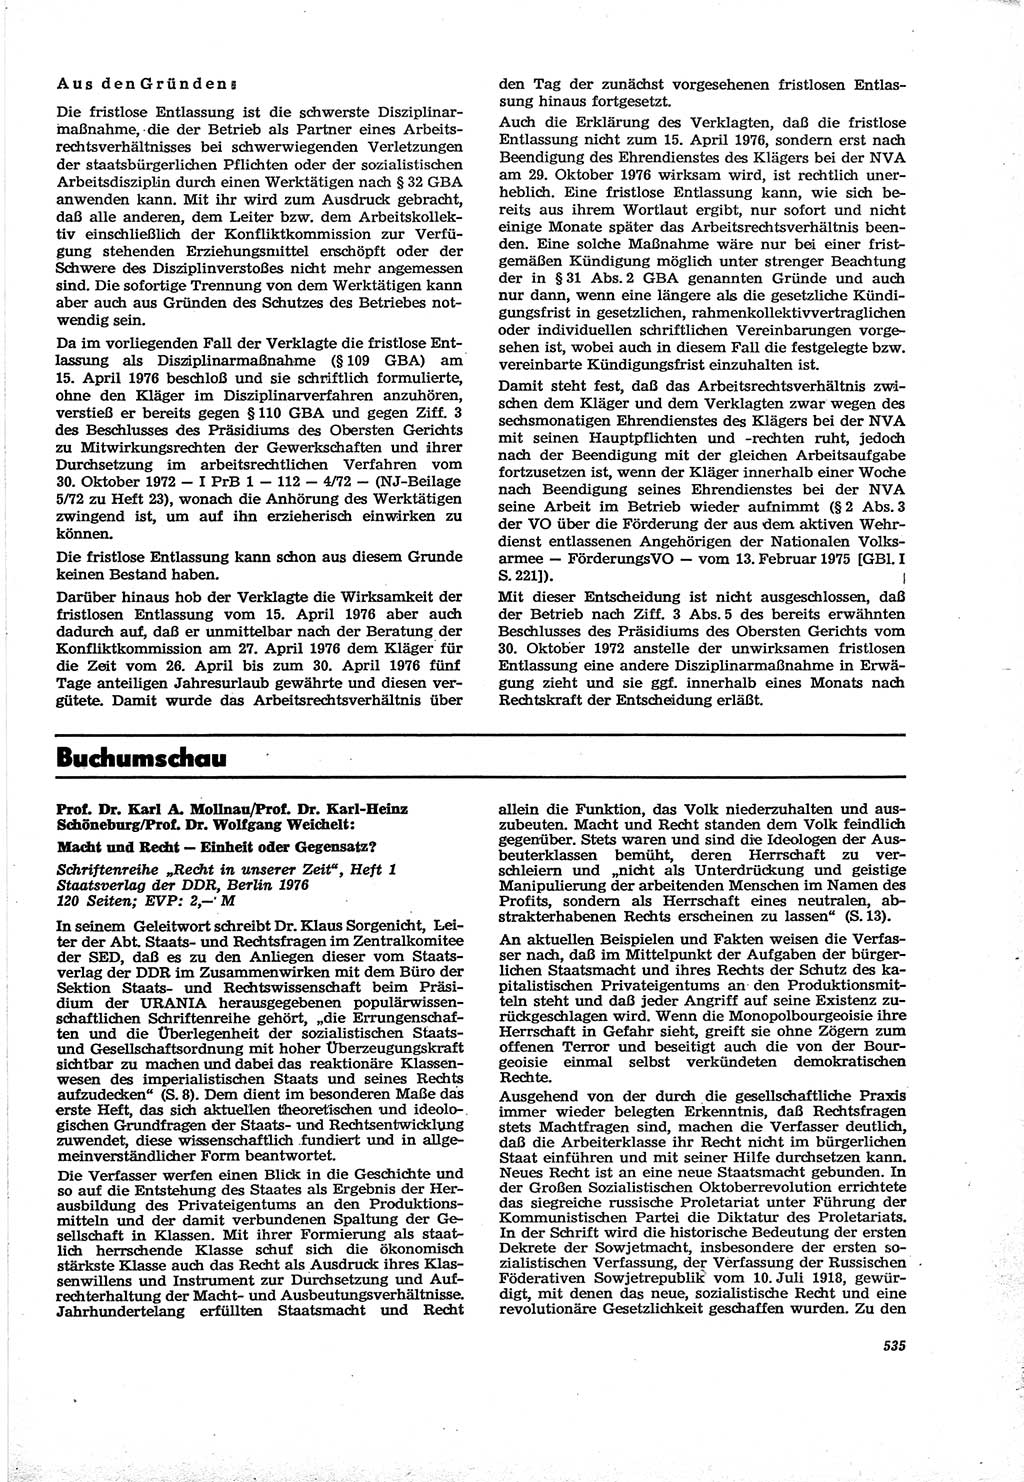 Neue Justiz (NJ), Zeitschrift für Recht und Rechtswissenschaft [Deutsche Demokratische Republik (DDR)], 30. Jahrgang 1976, Seite 535 (NJ DDR 1976, S. 535)